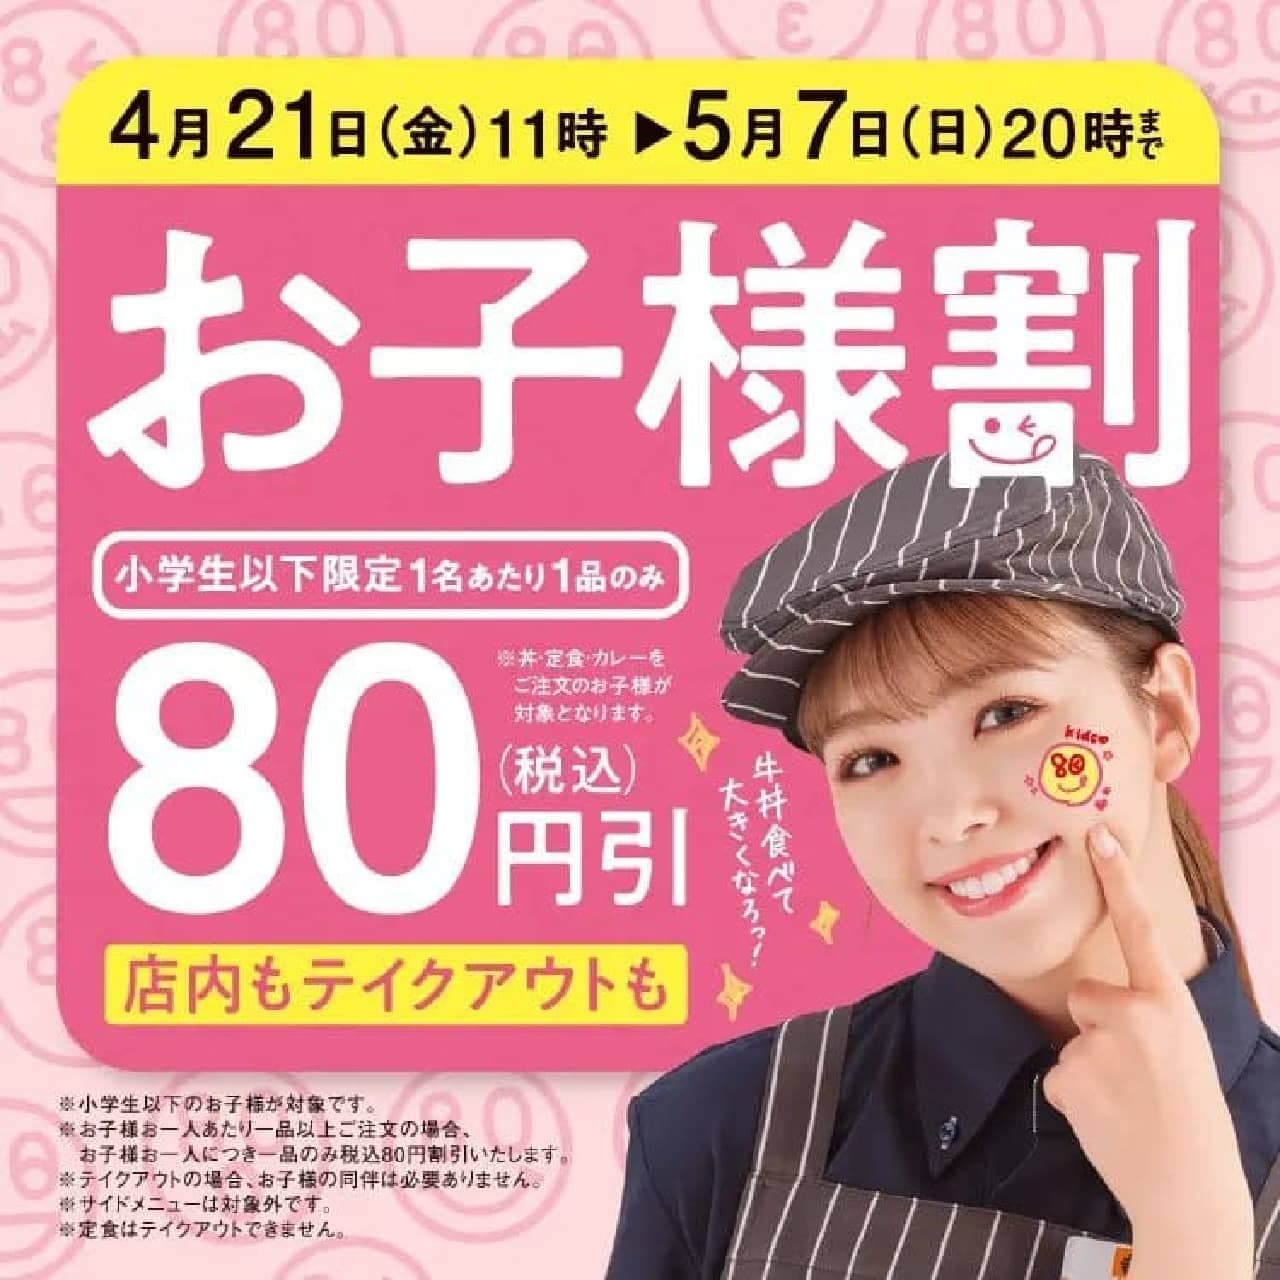 Yoshinoya "Children's Discount